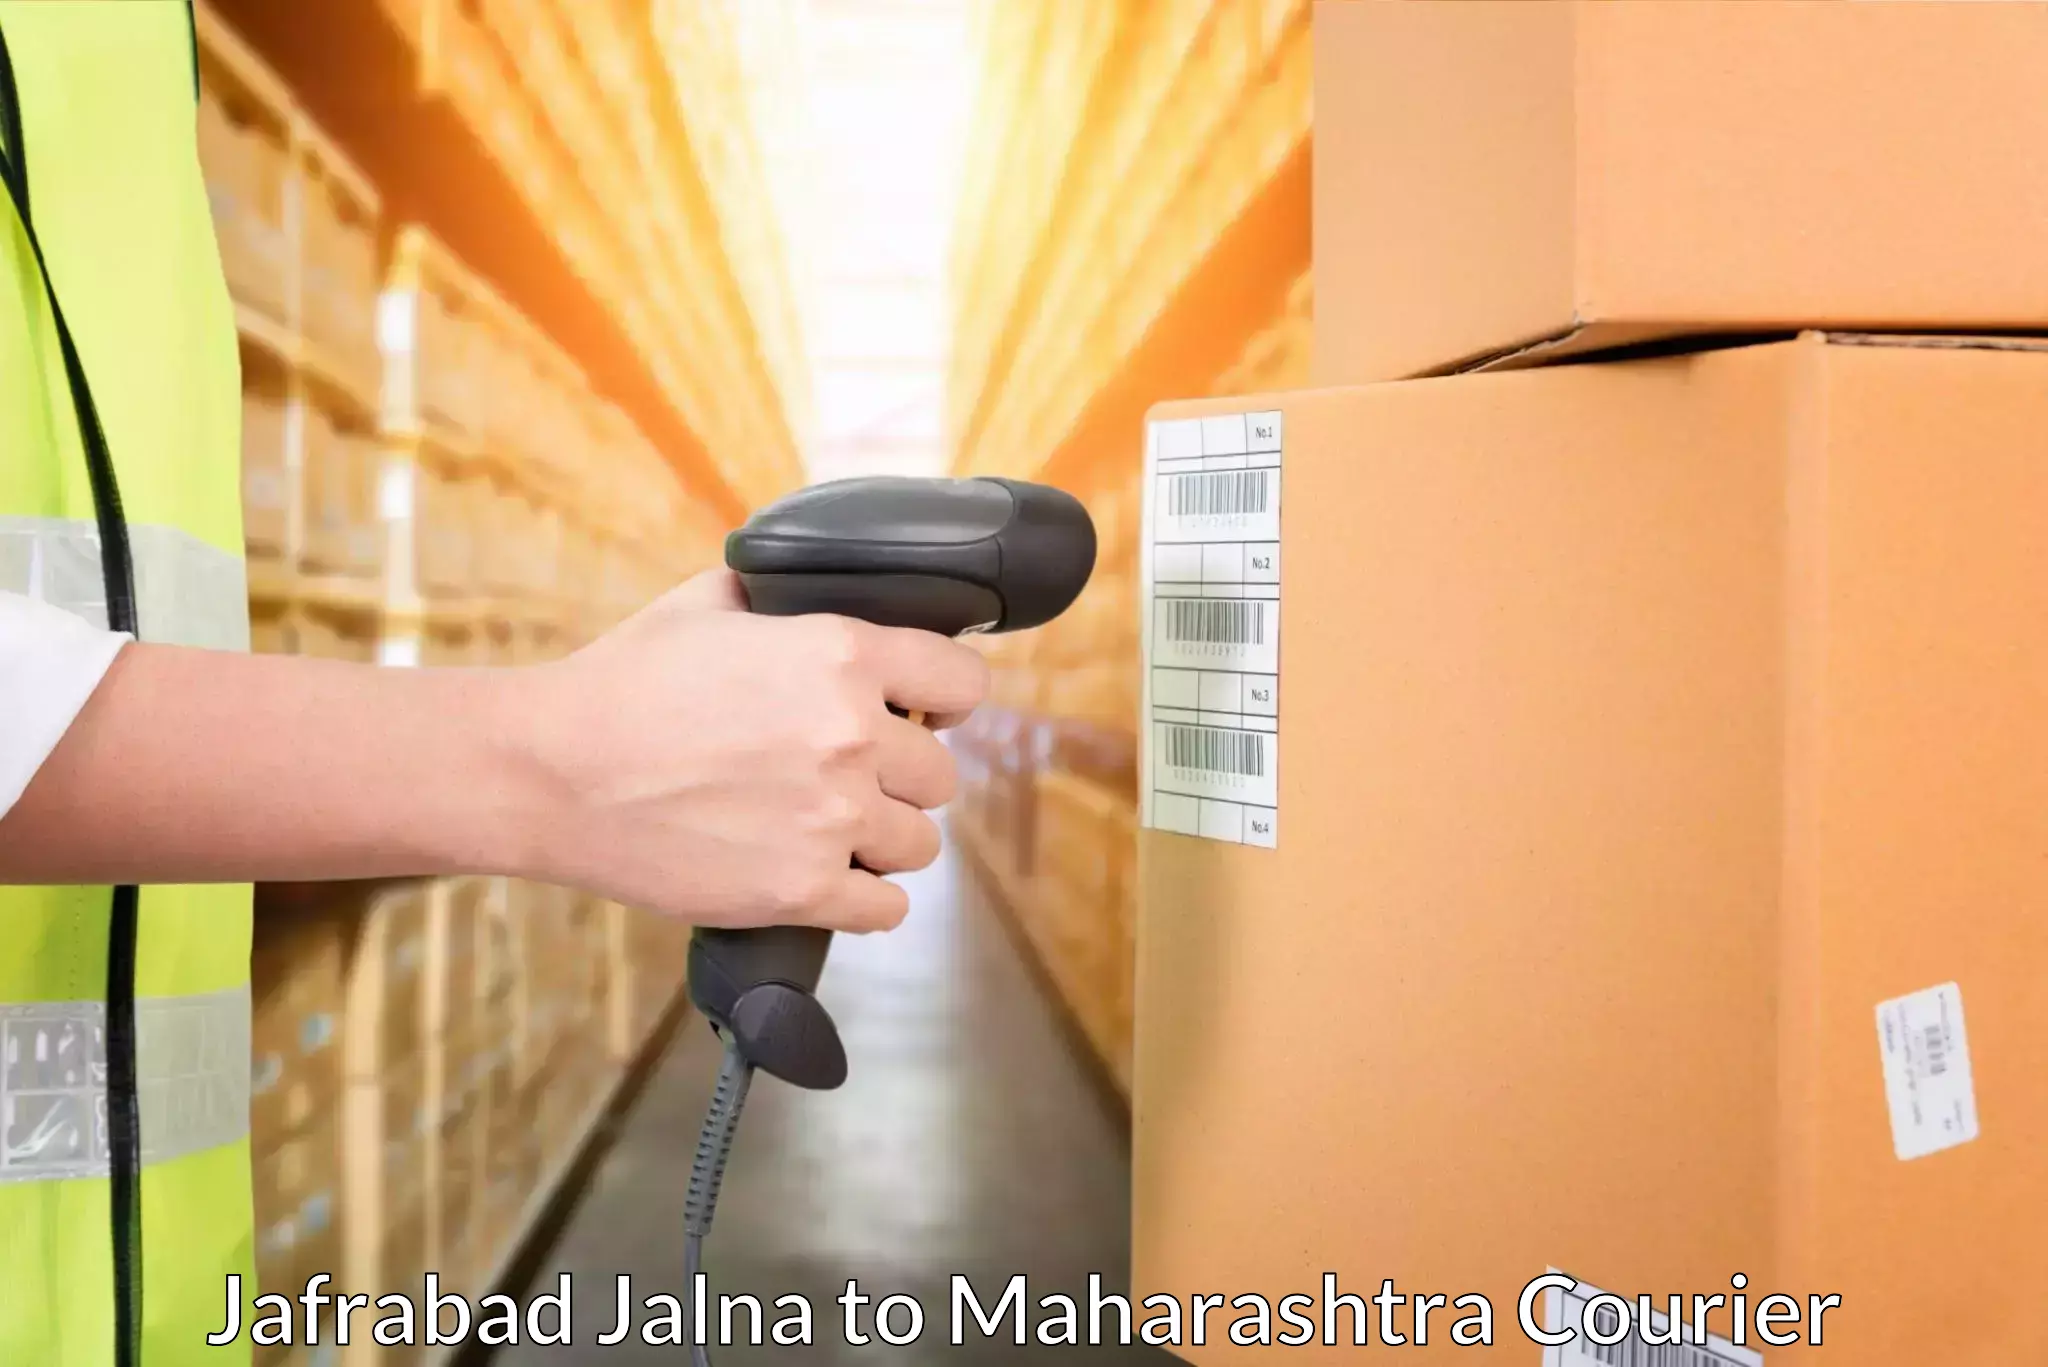 Nationwide shipping capabilities Jafrabad Jalna to Gondia